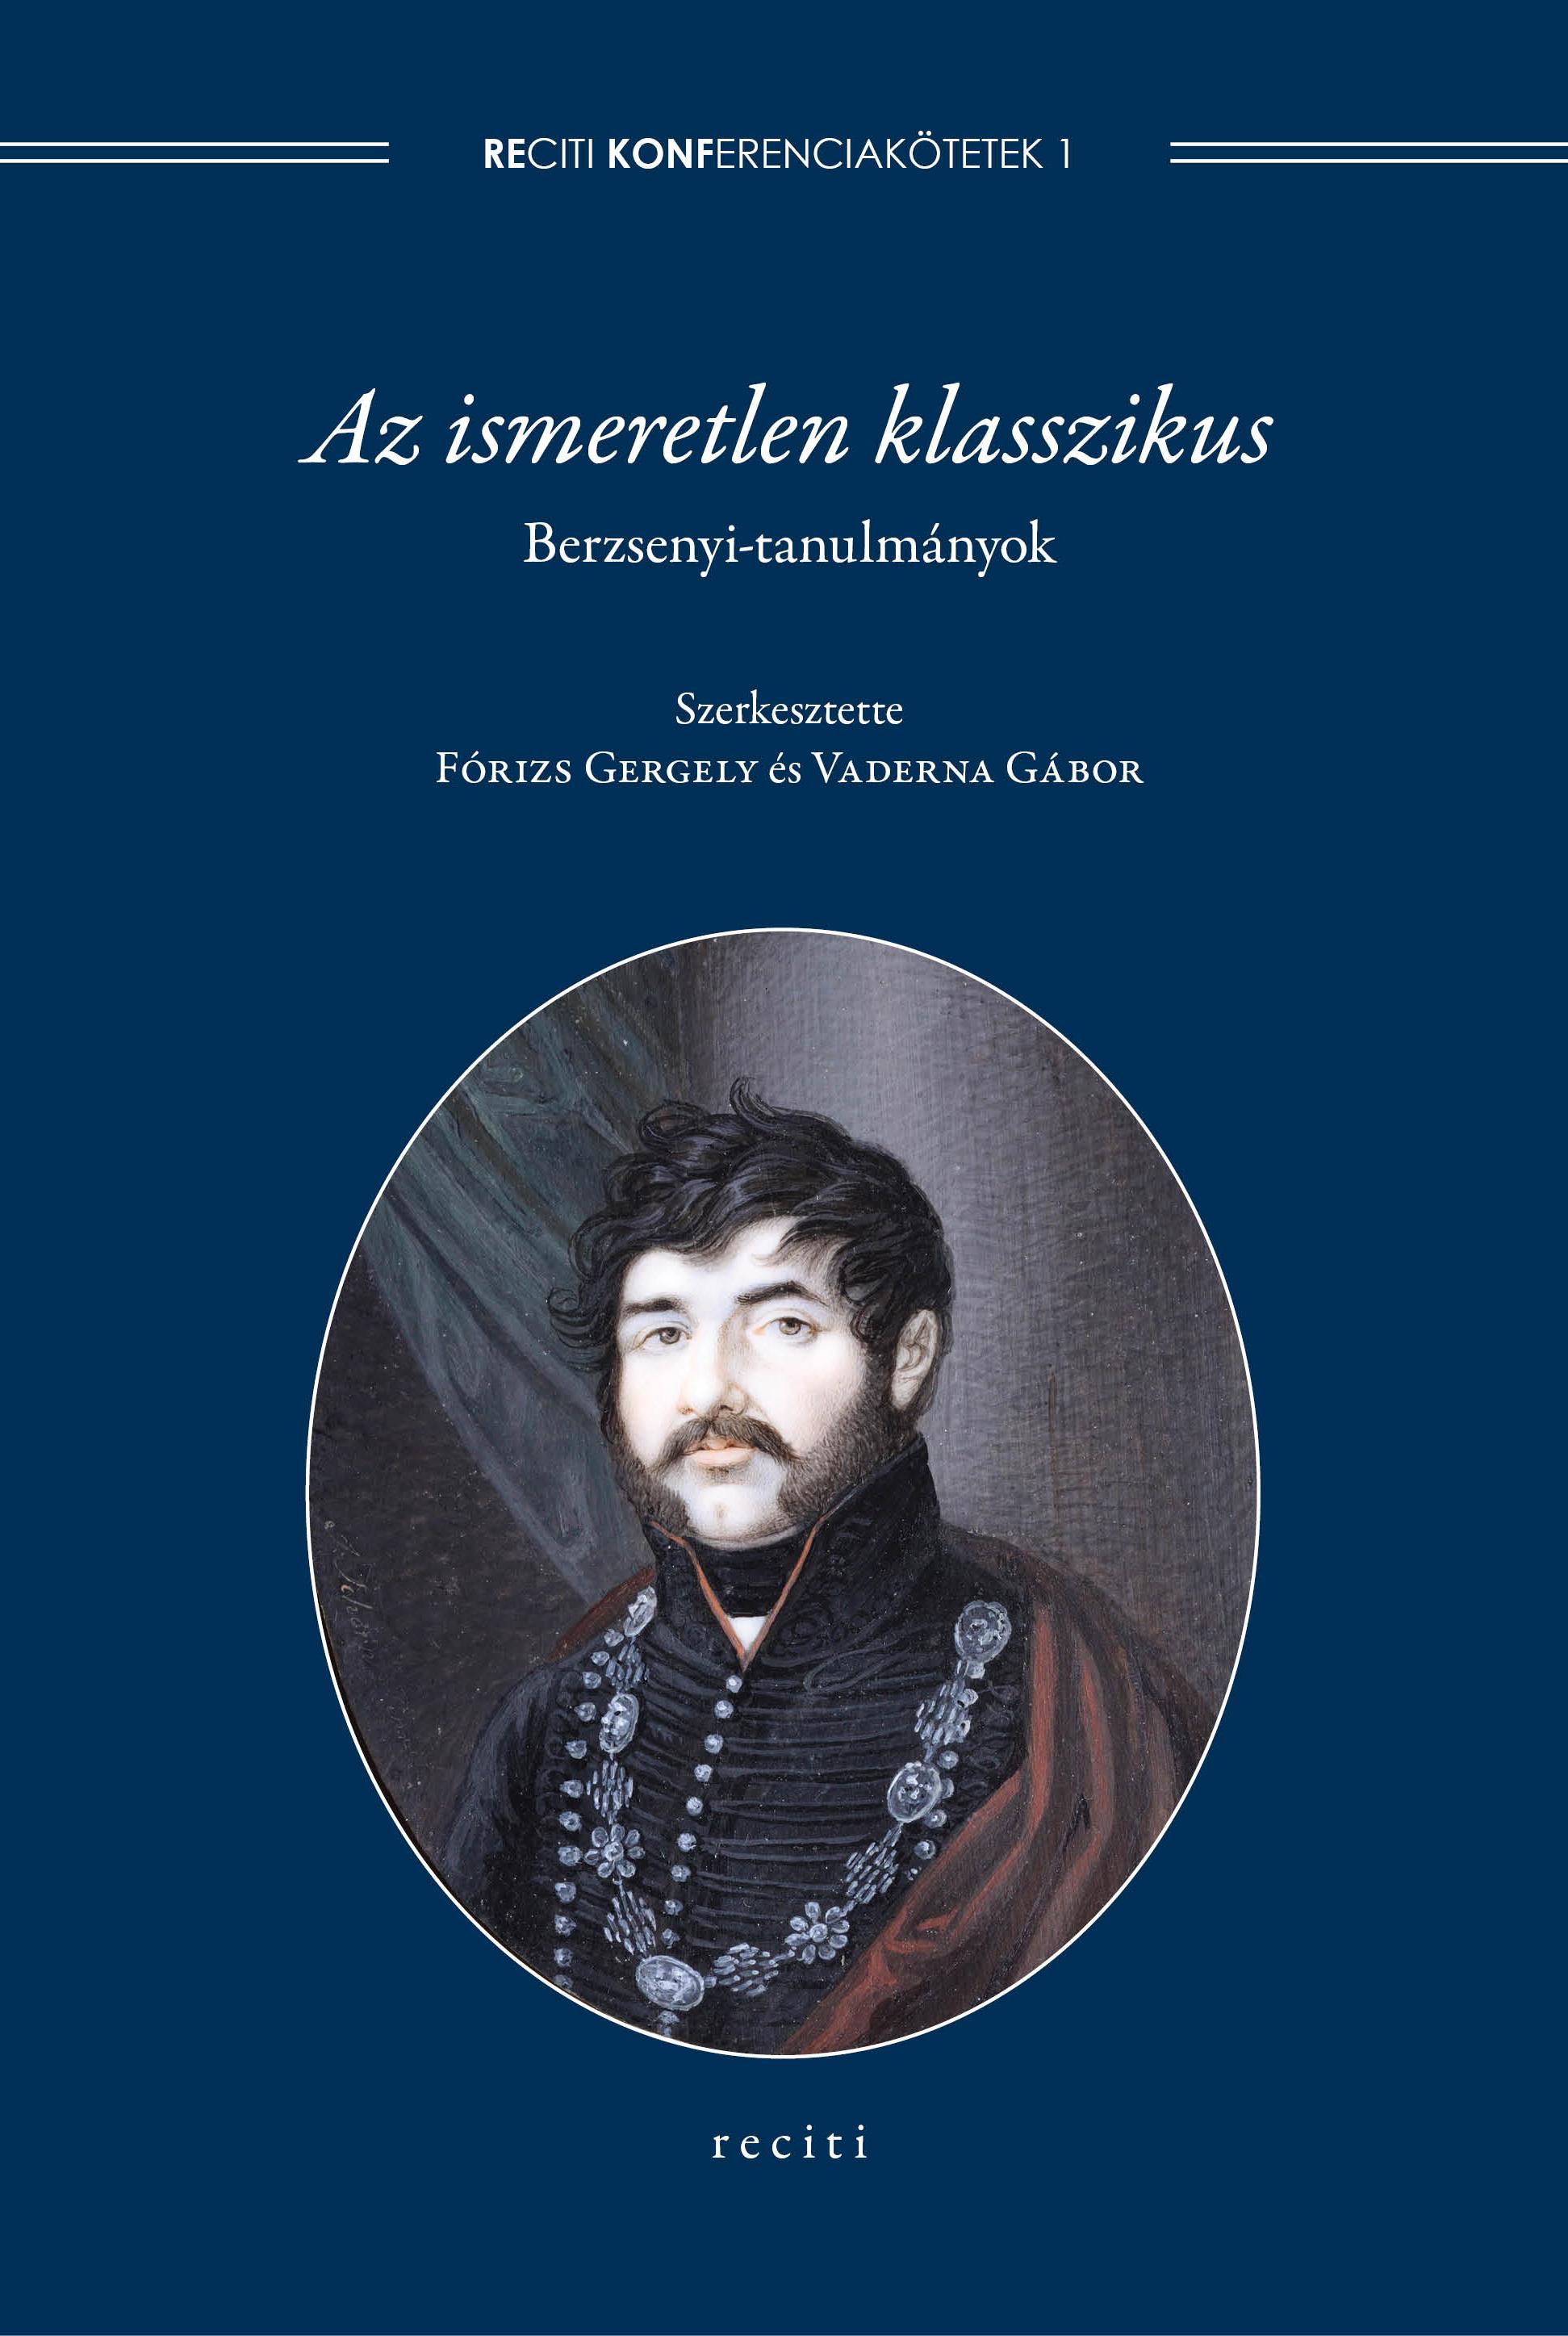 Lendület Nyugat-magyarországi irodalom 1770–1820 Kutatócsoport: Publikációk (2017–)